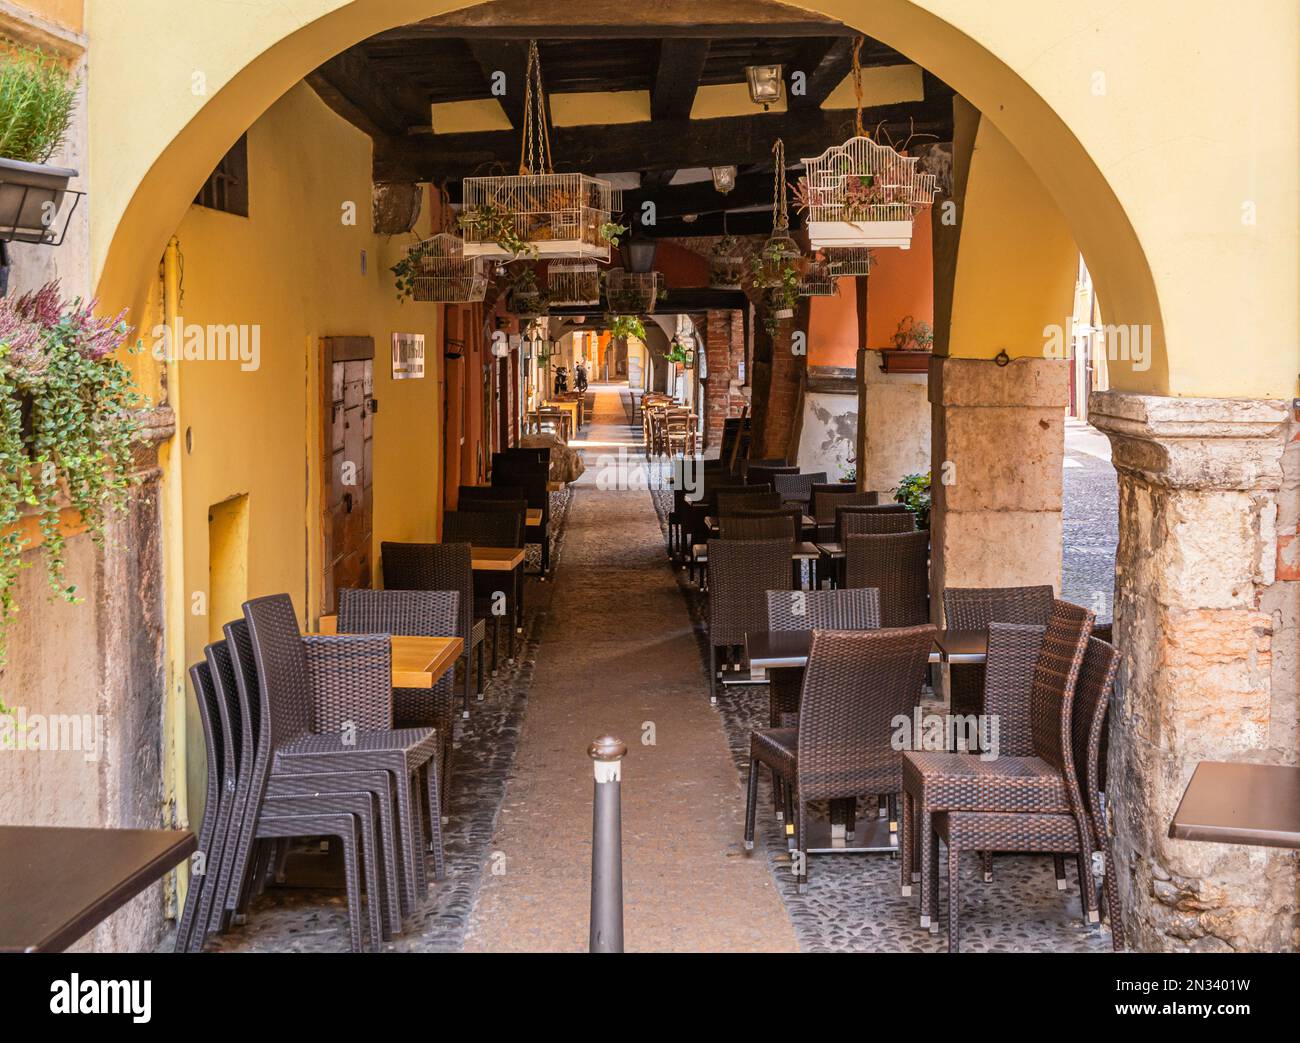 Galerías y restaurantes característicos en el centro histórico de la ciudad de Verona, región de Veneto, norte de Italia, Foto de stock